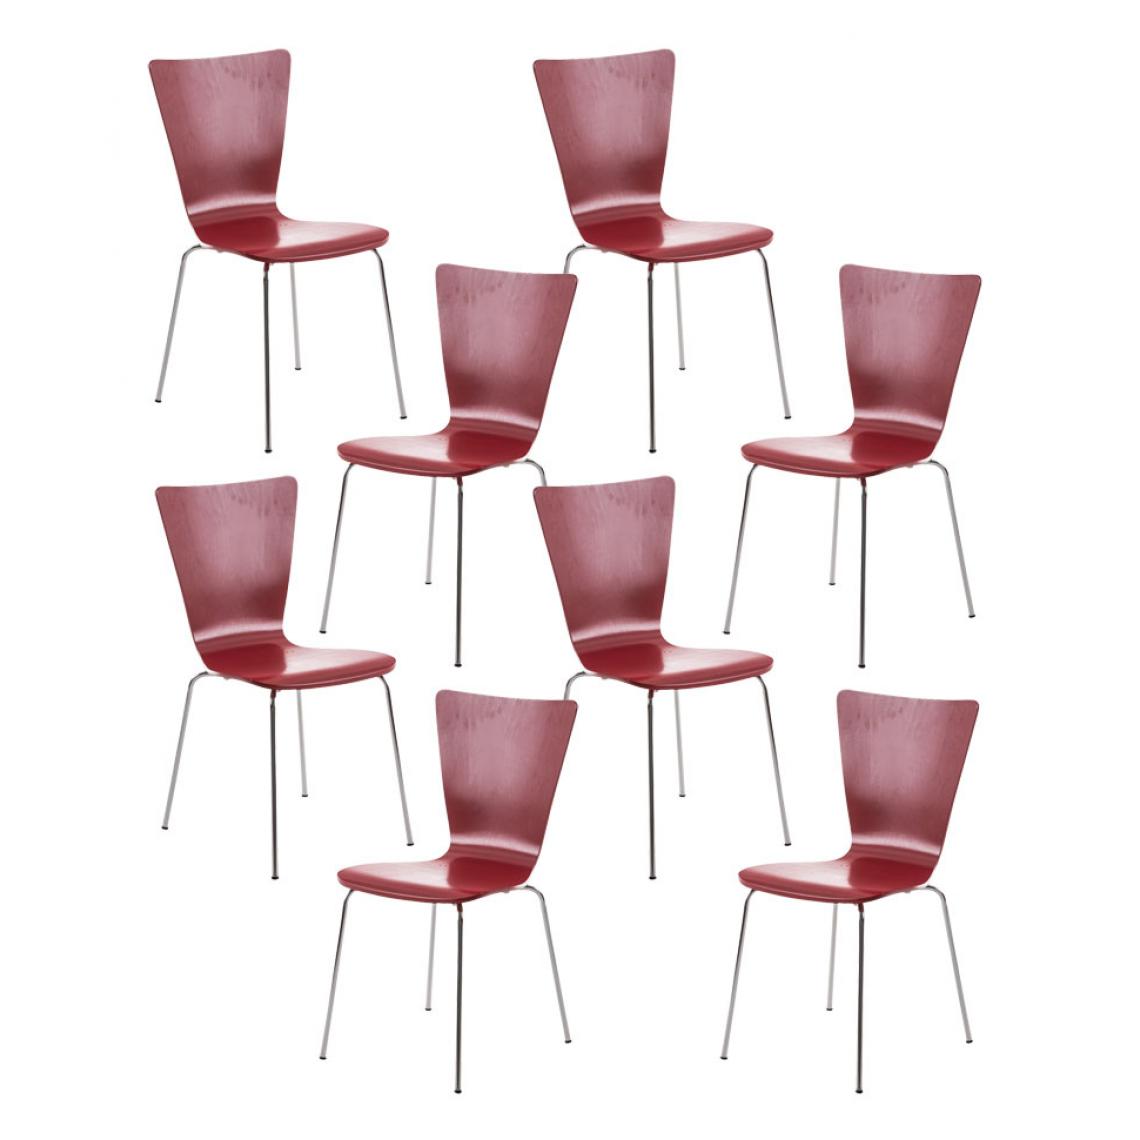 Icaverne - Esthetique Lot de 8 chaises visiteurs famille Jakarta couleur rouge - Chaises